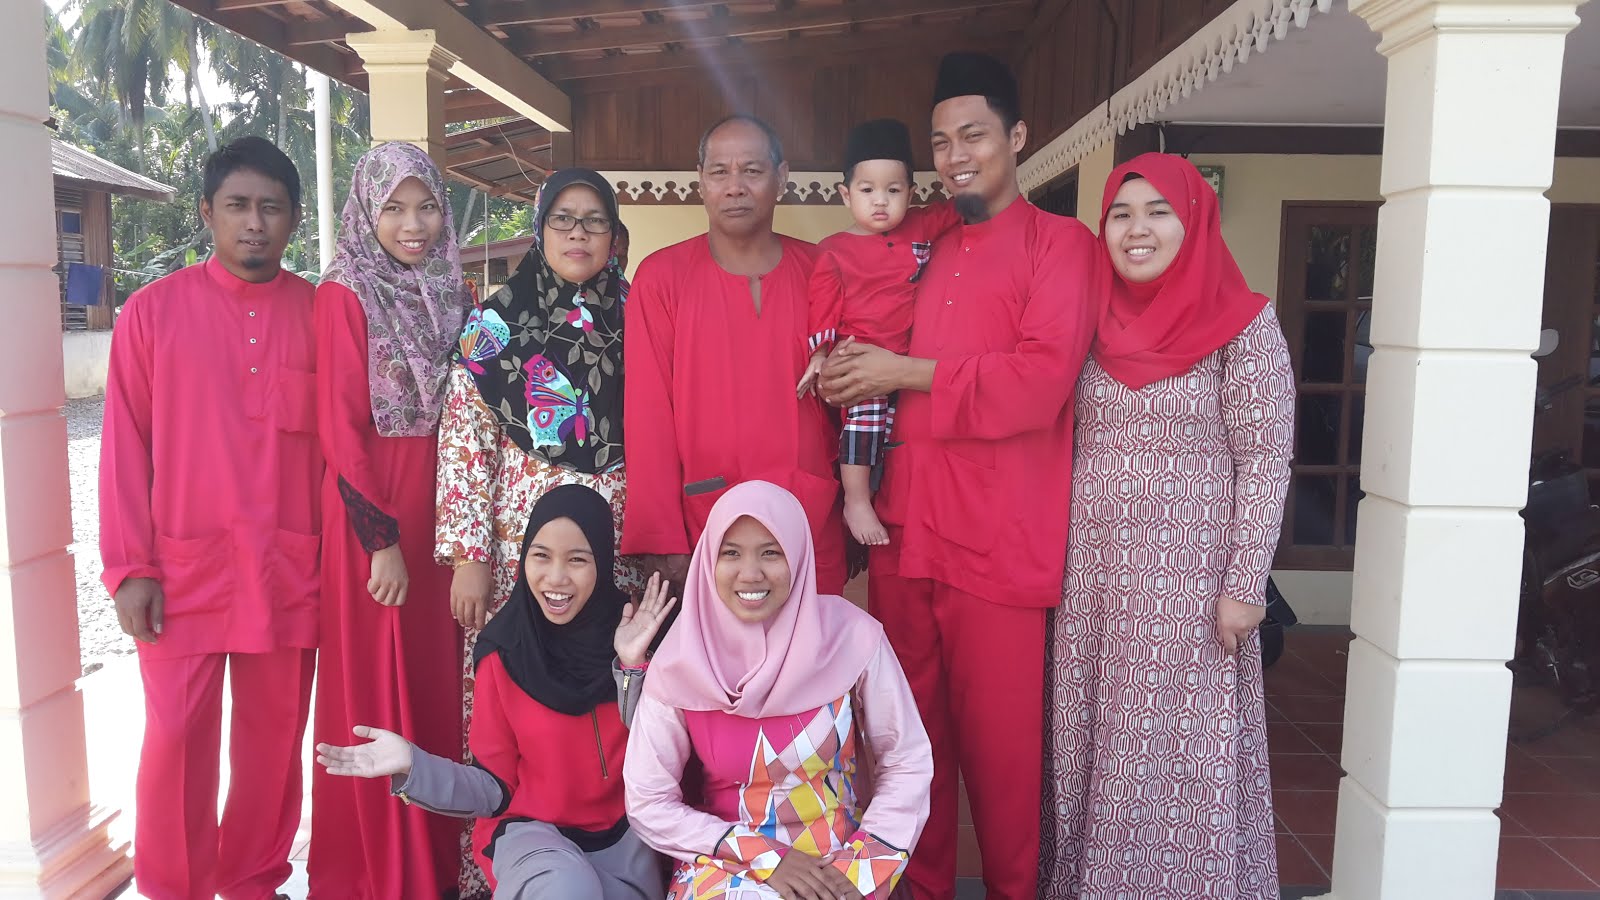 Kamshah's Family